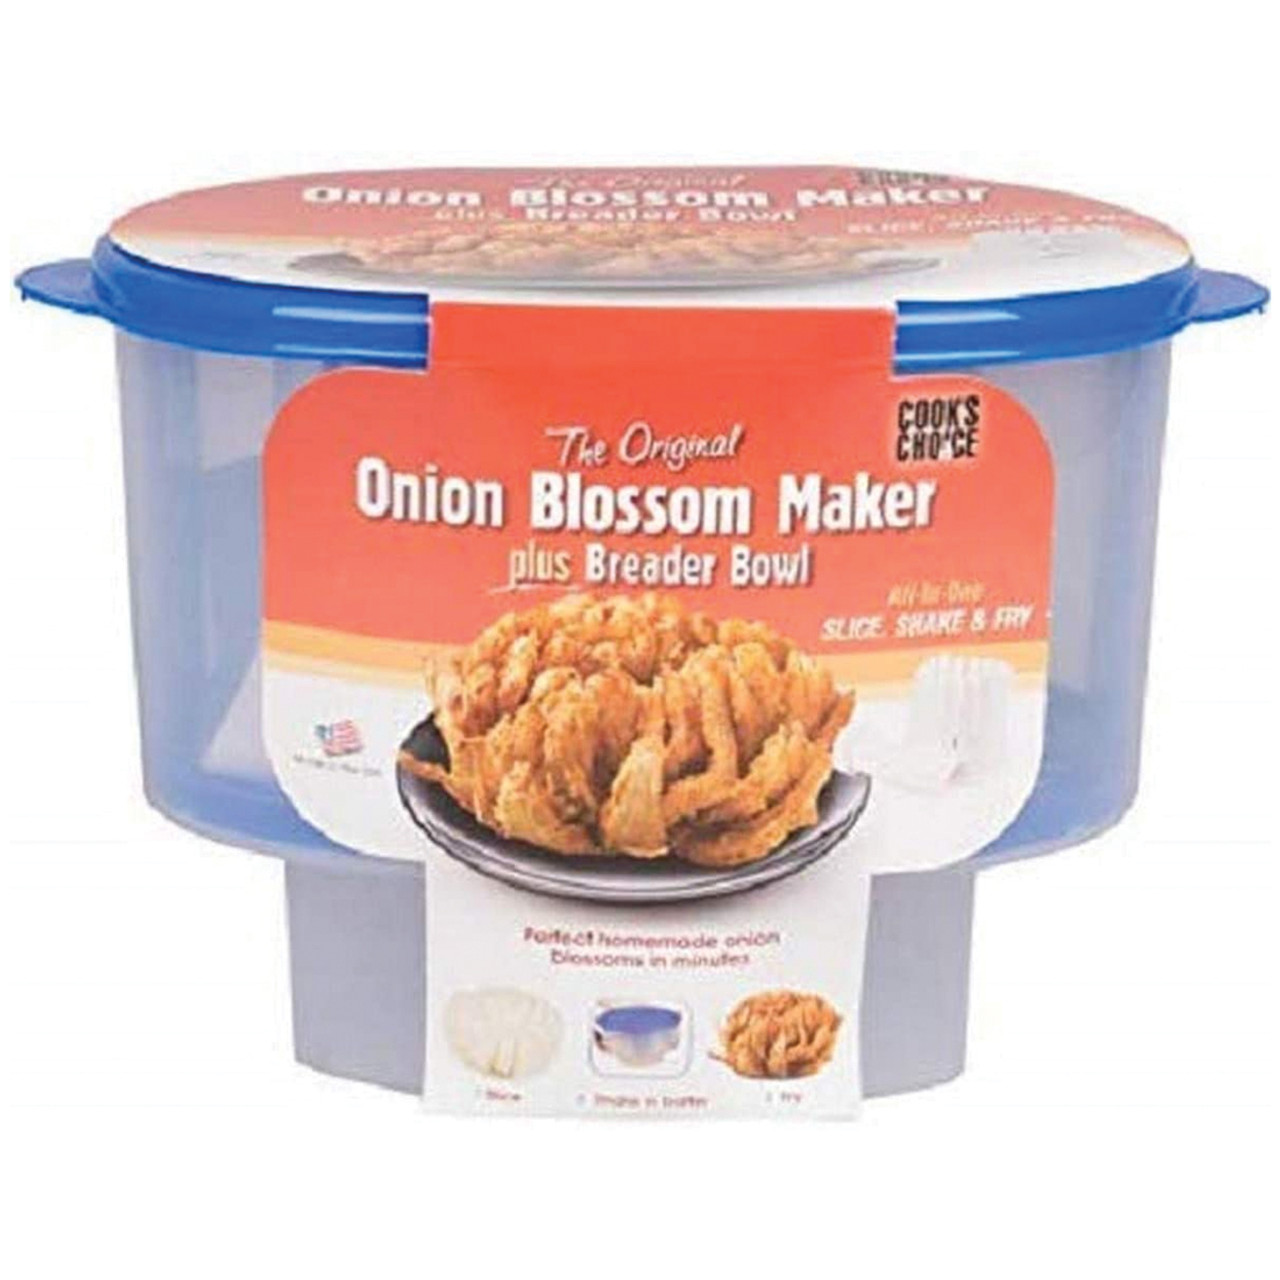 The Original Onion Blossom Maker Set